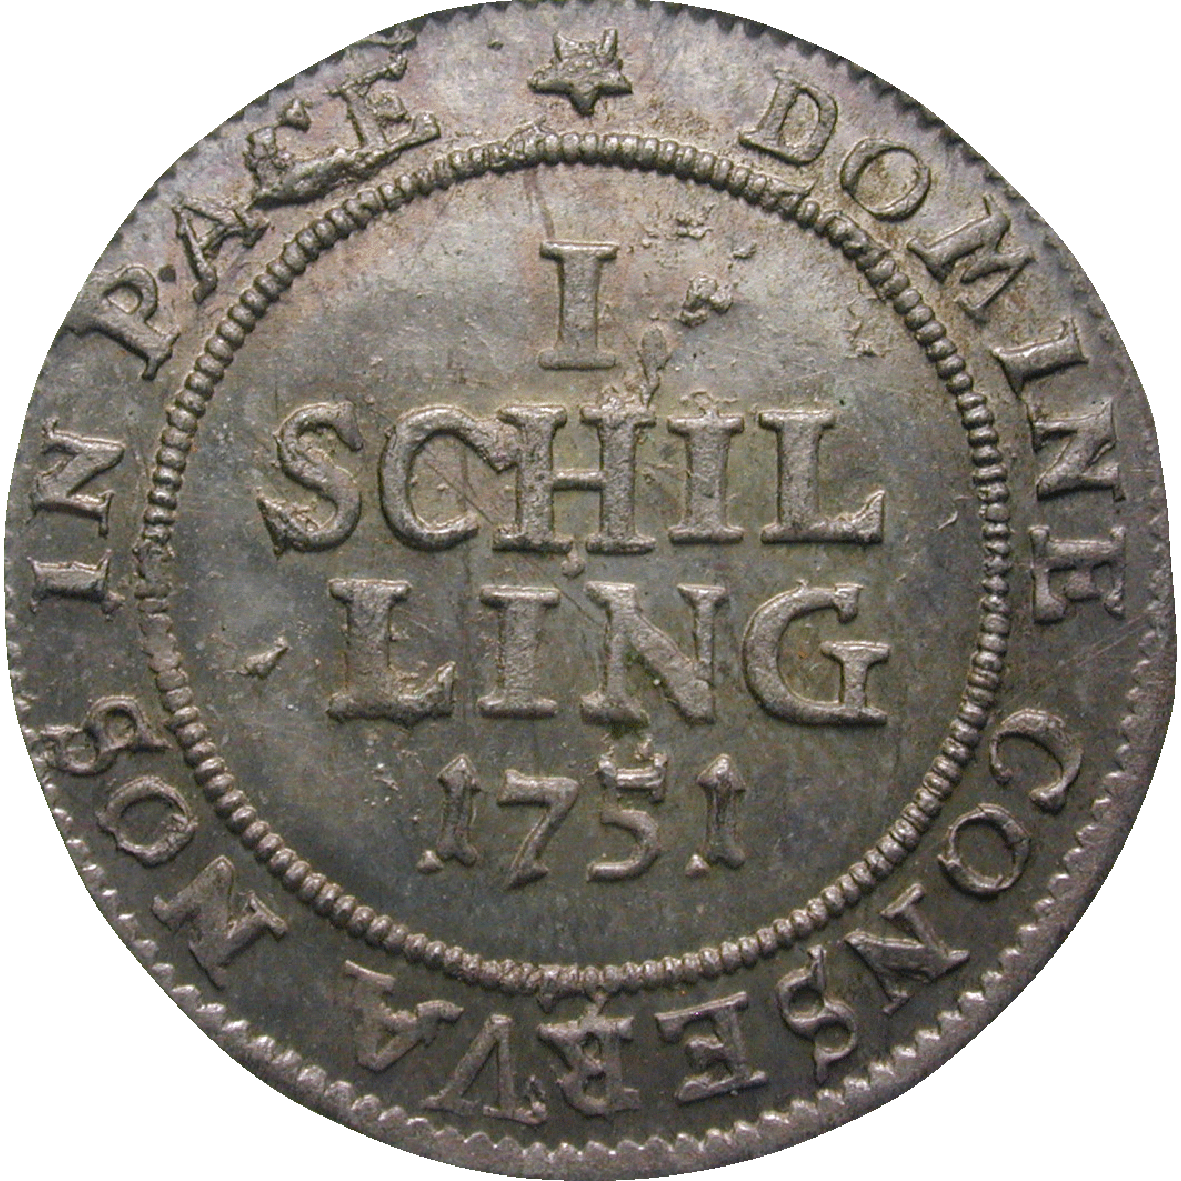 Republic of Zurich, 1 Schilling 1751 (reverse)